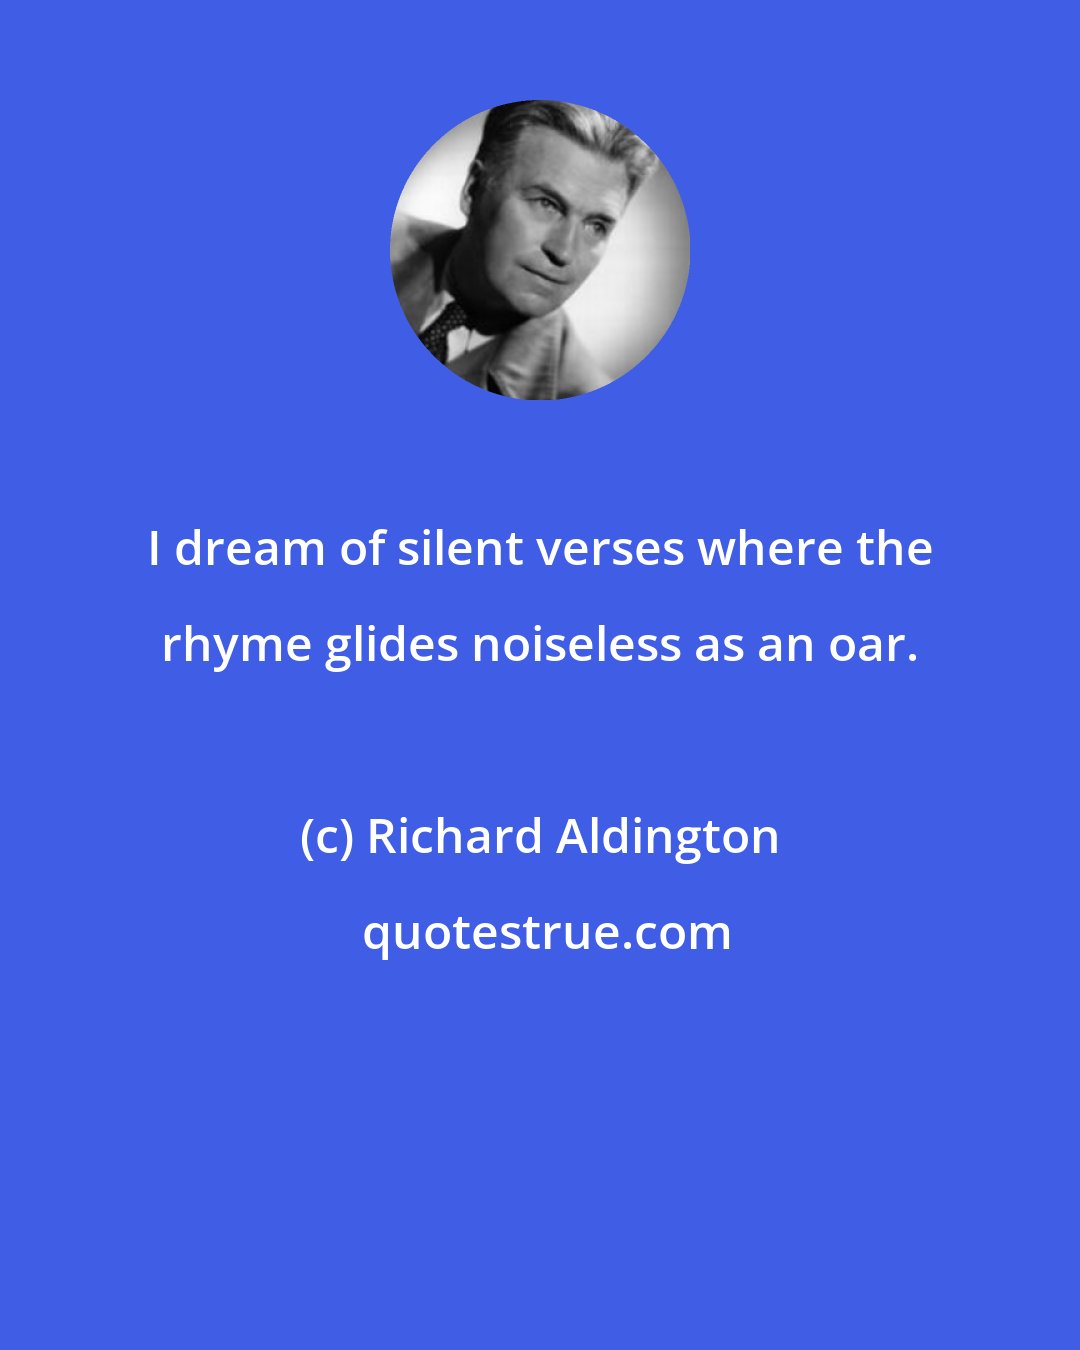 Richard Aldington: I dream of silent verses where the rhyme glides noiseless as an oar.